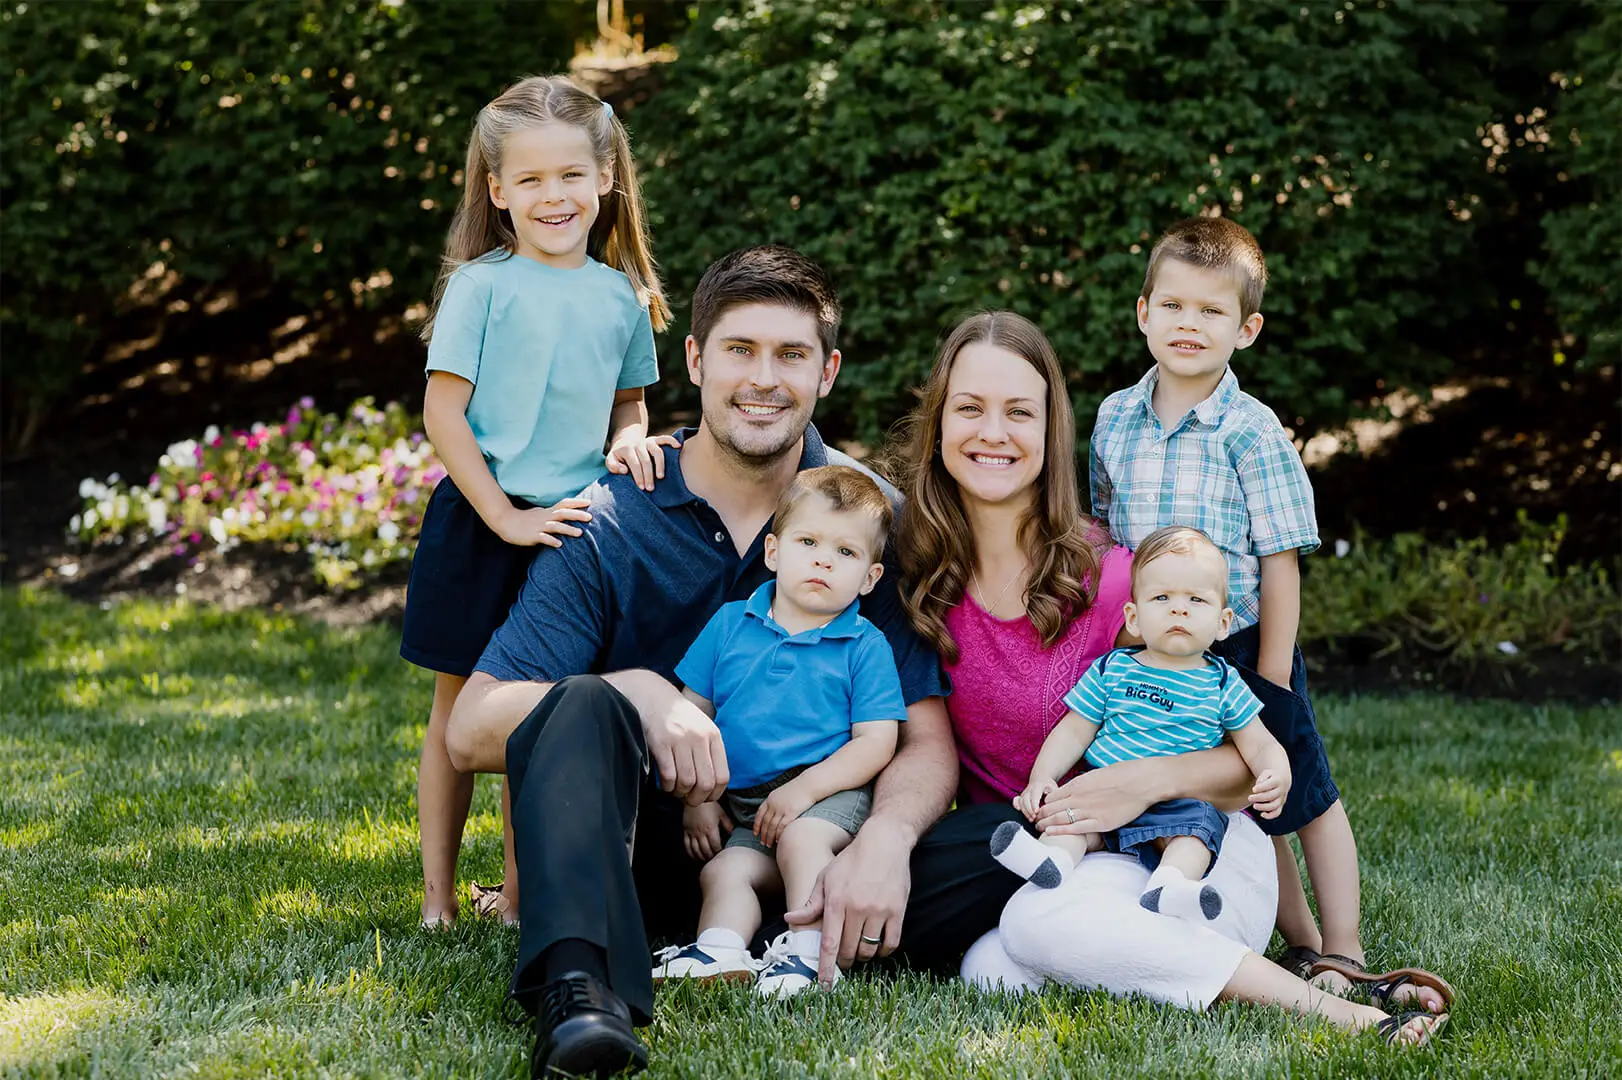 Dr Stephen Denny, Beavercreek Ohio Dentist and Family